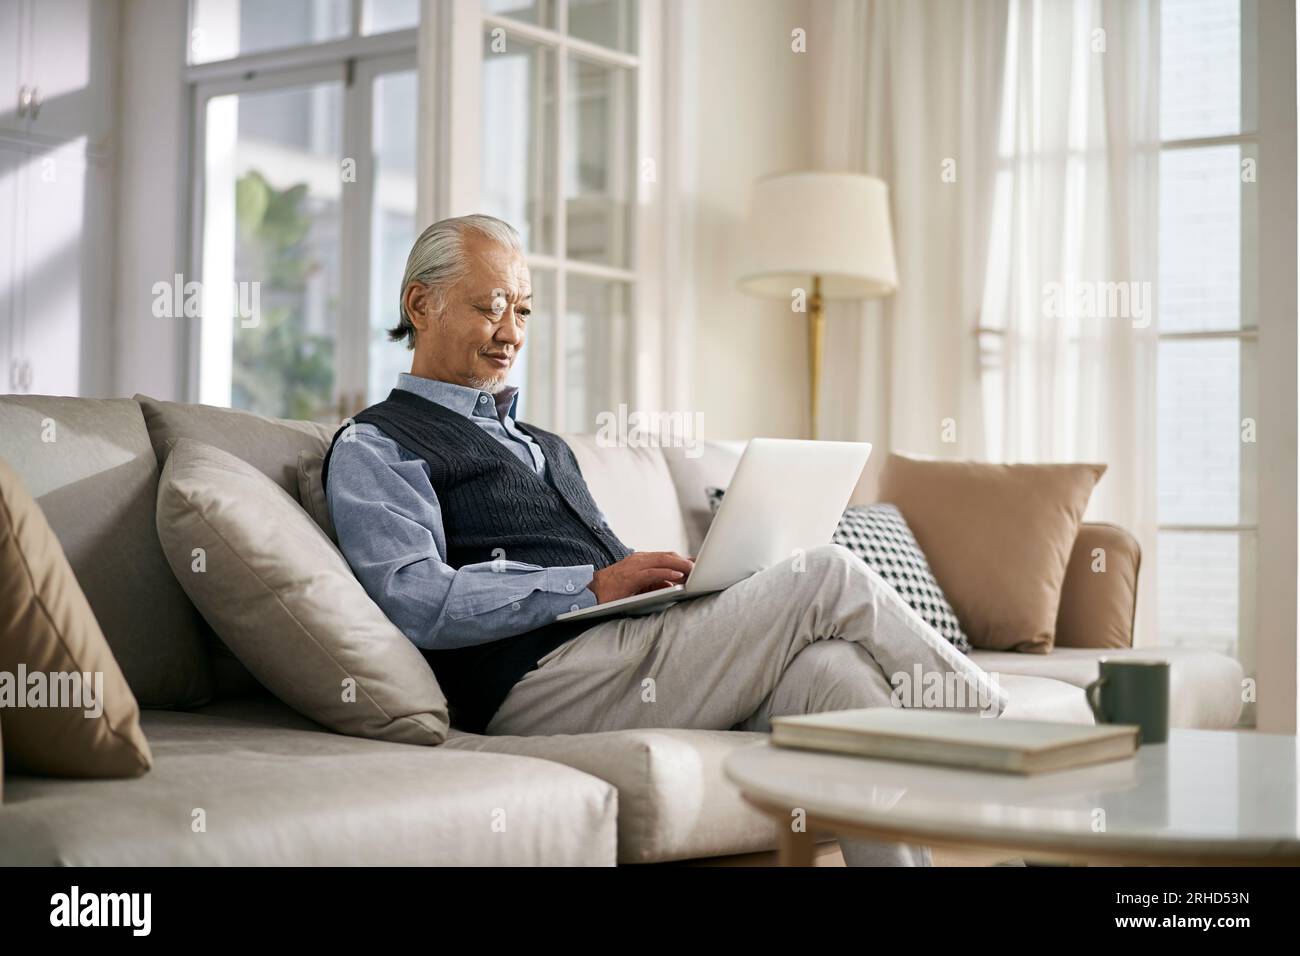 vue latérale d'un homme asiatique âgé assis sur un canapé à la maison en utilisant un ordinateur portable Banque D'Images